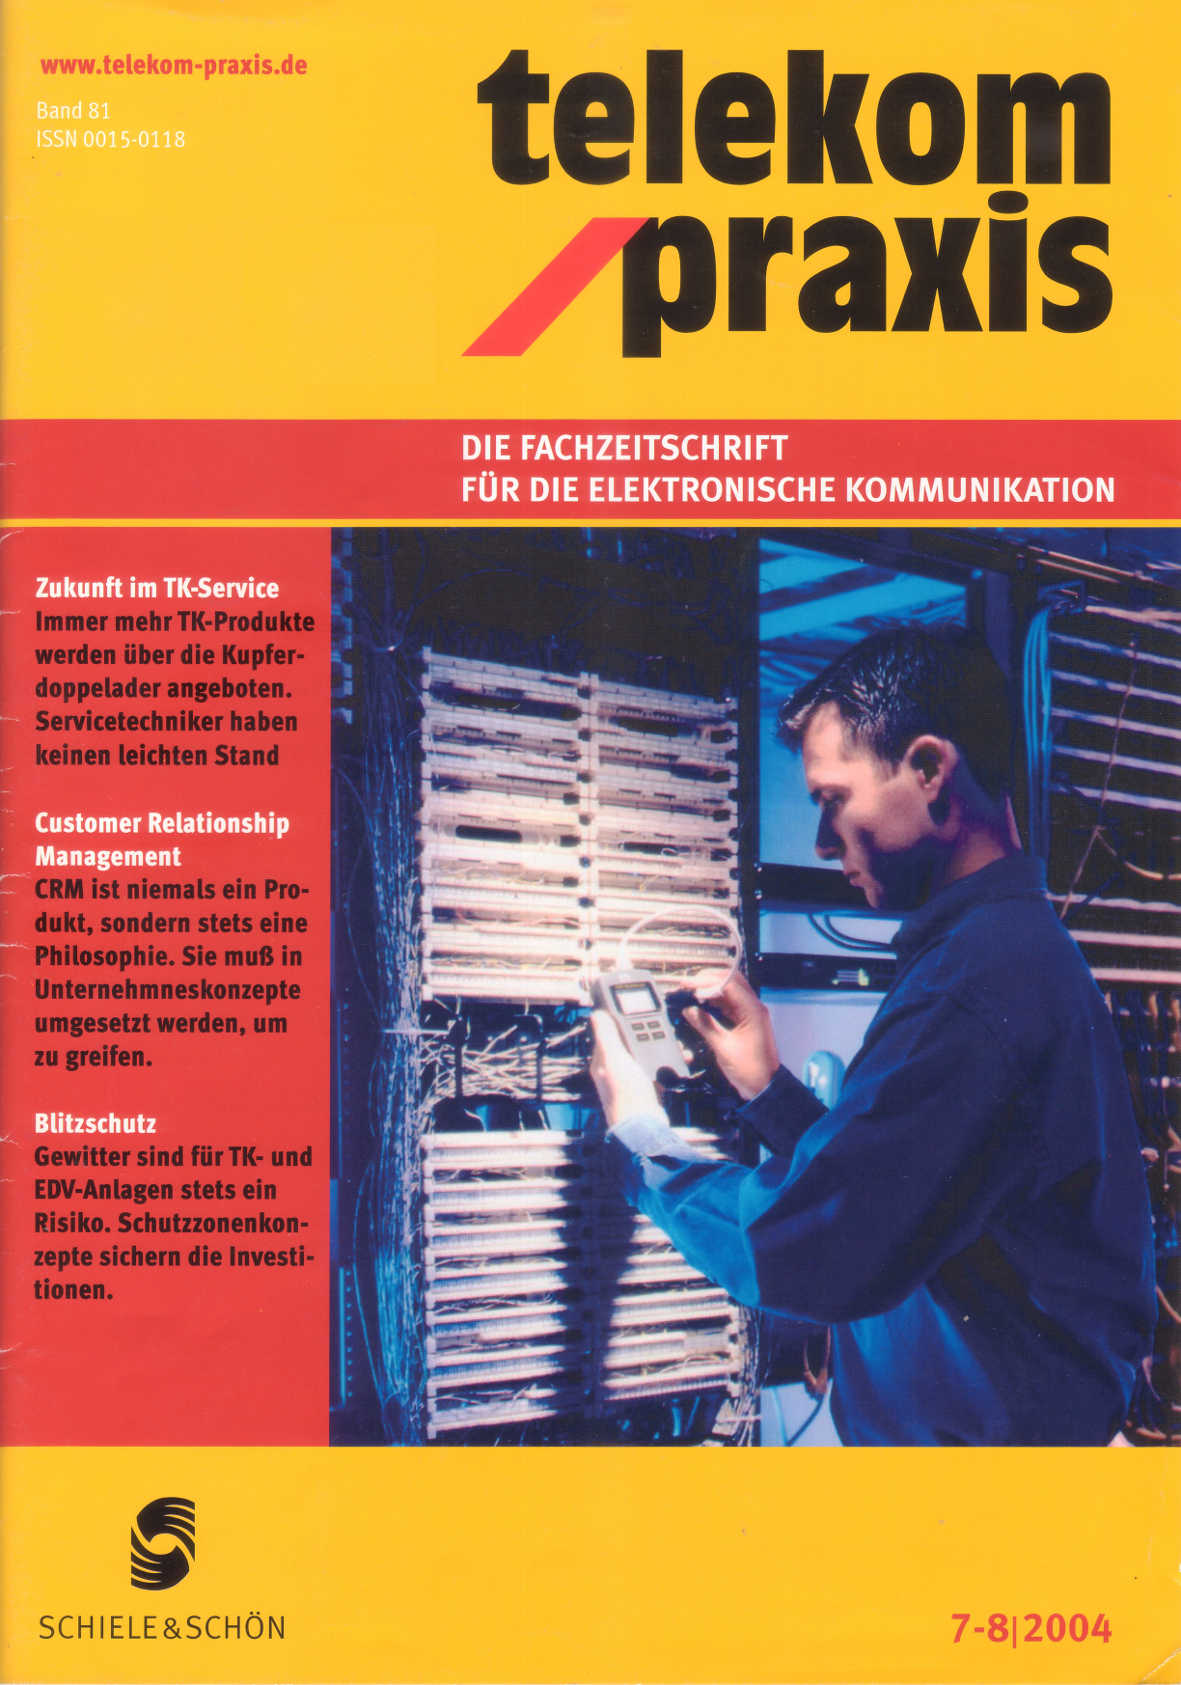 telekom praxis 7/8-2004, Fachverlag Schiele und Schön, Berlin, ISSN 0015-0118